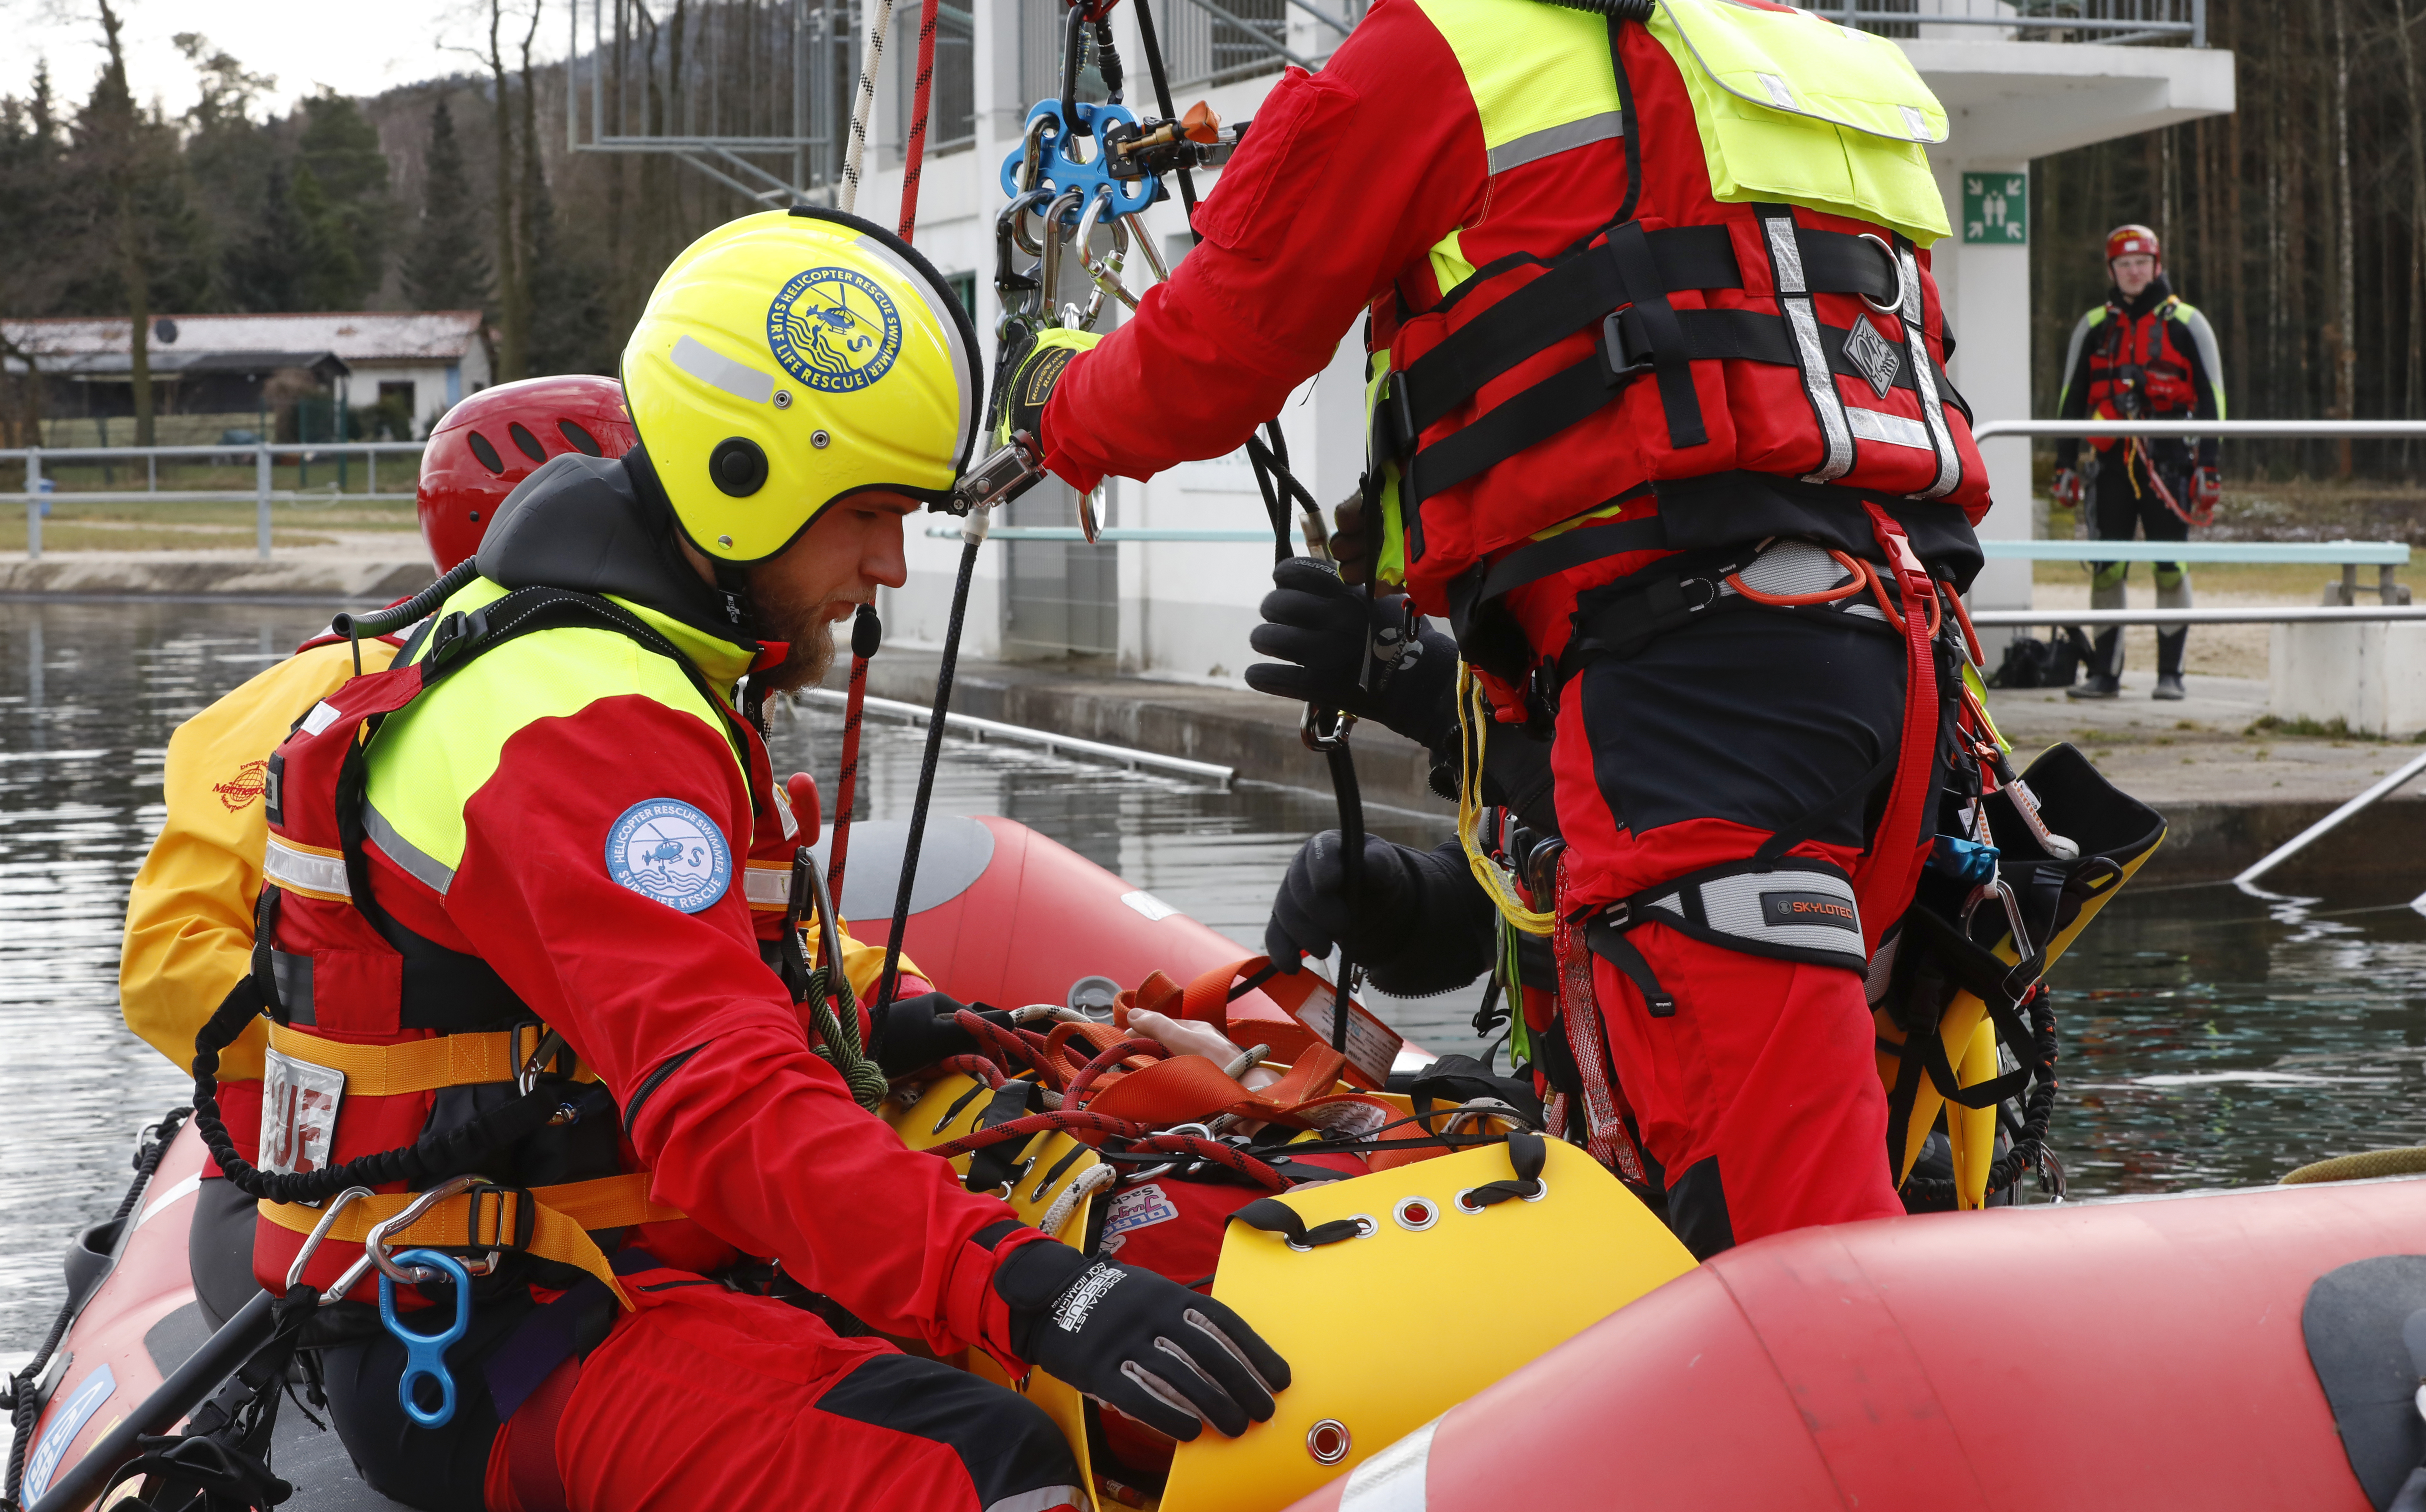 Emergency Live | O surgimento do HRS - Surf Life Rescue: salvamento aquático e imagem de segurança 38